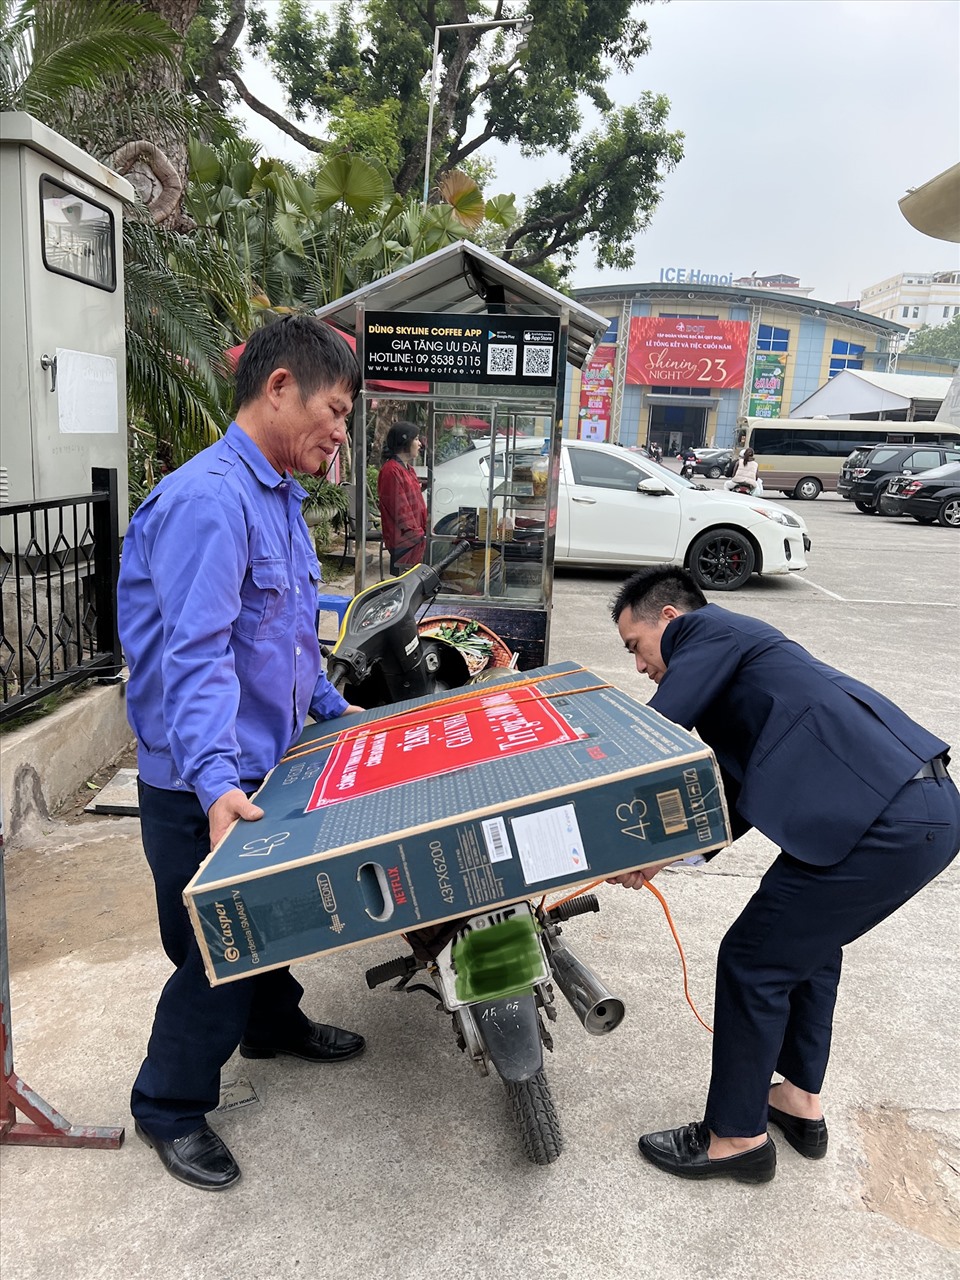 Anh công nhân (bên trái) nhờ người trọ giúp buộc chiếc Tivi trúng giải tại Tết Sum vầy do Liên đoàn Lao động Thành phố Hà Nội tổ chức. Ảnh: Linh Nguyên